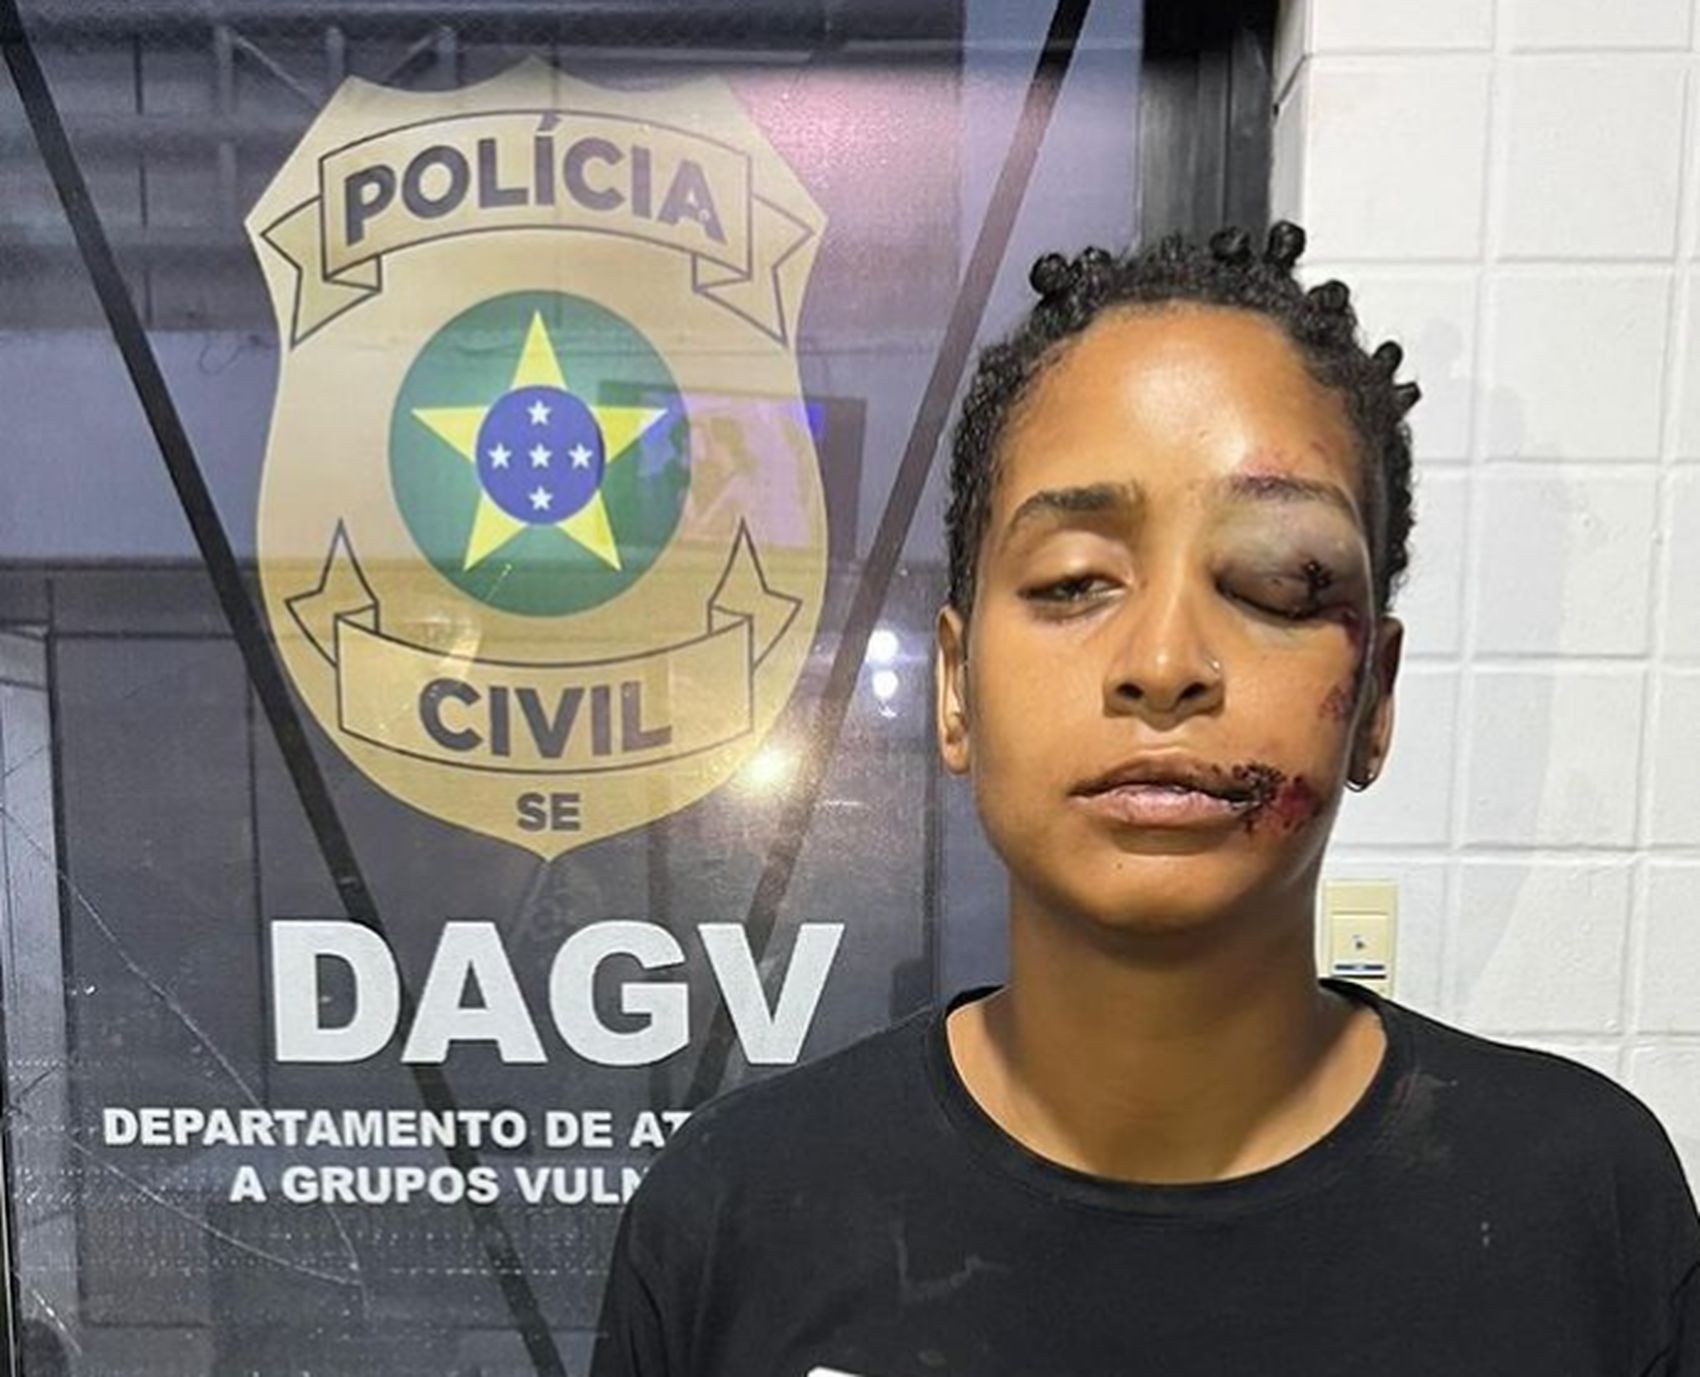 Suspeito de envolvimento em briga que deixou mulher desfigurada em Aracaju  é identificado pela polícia